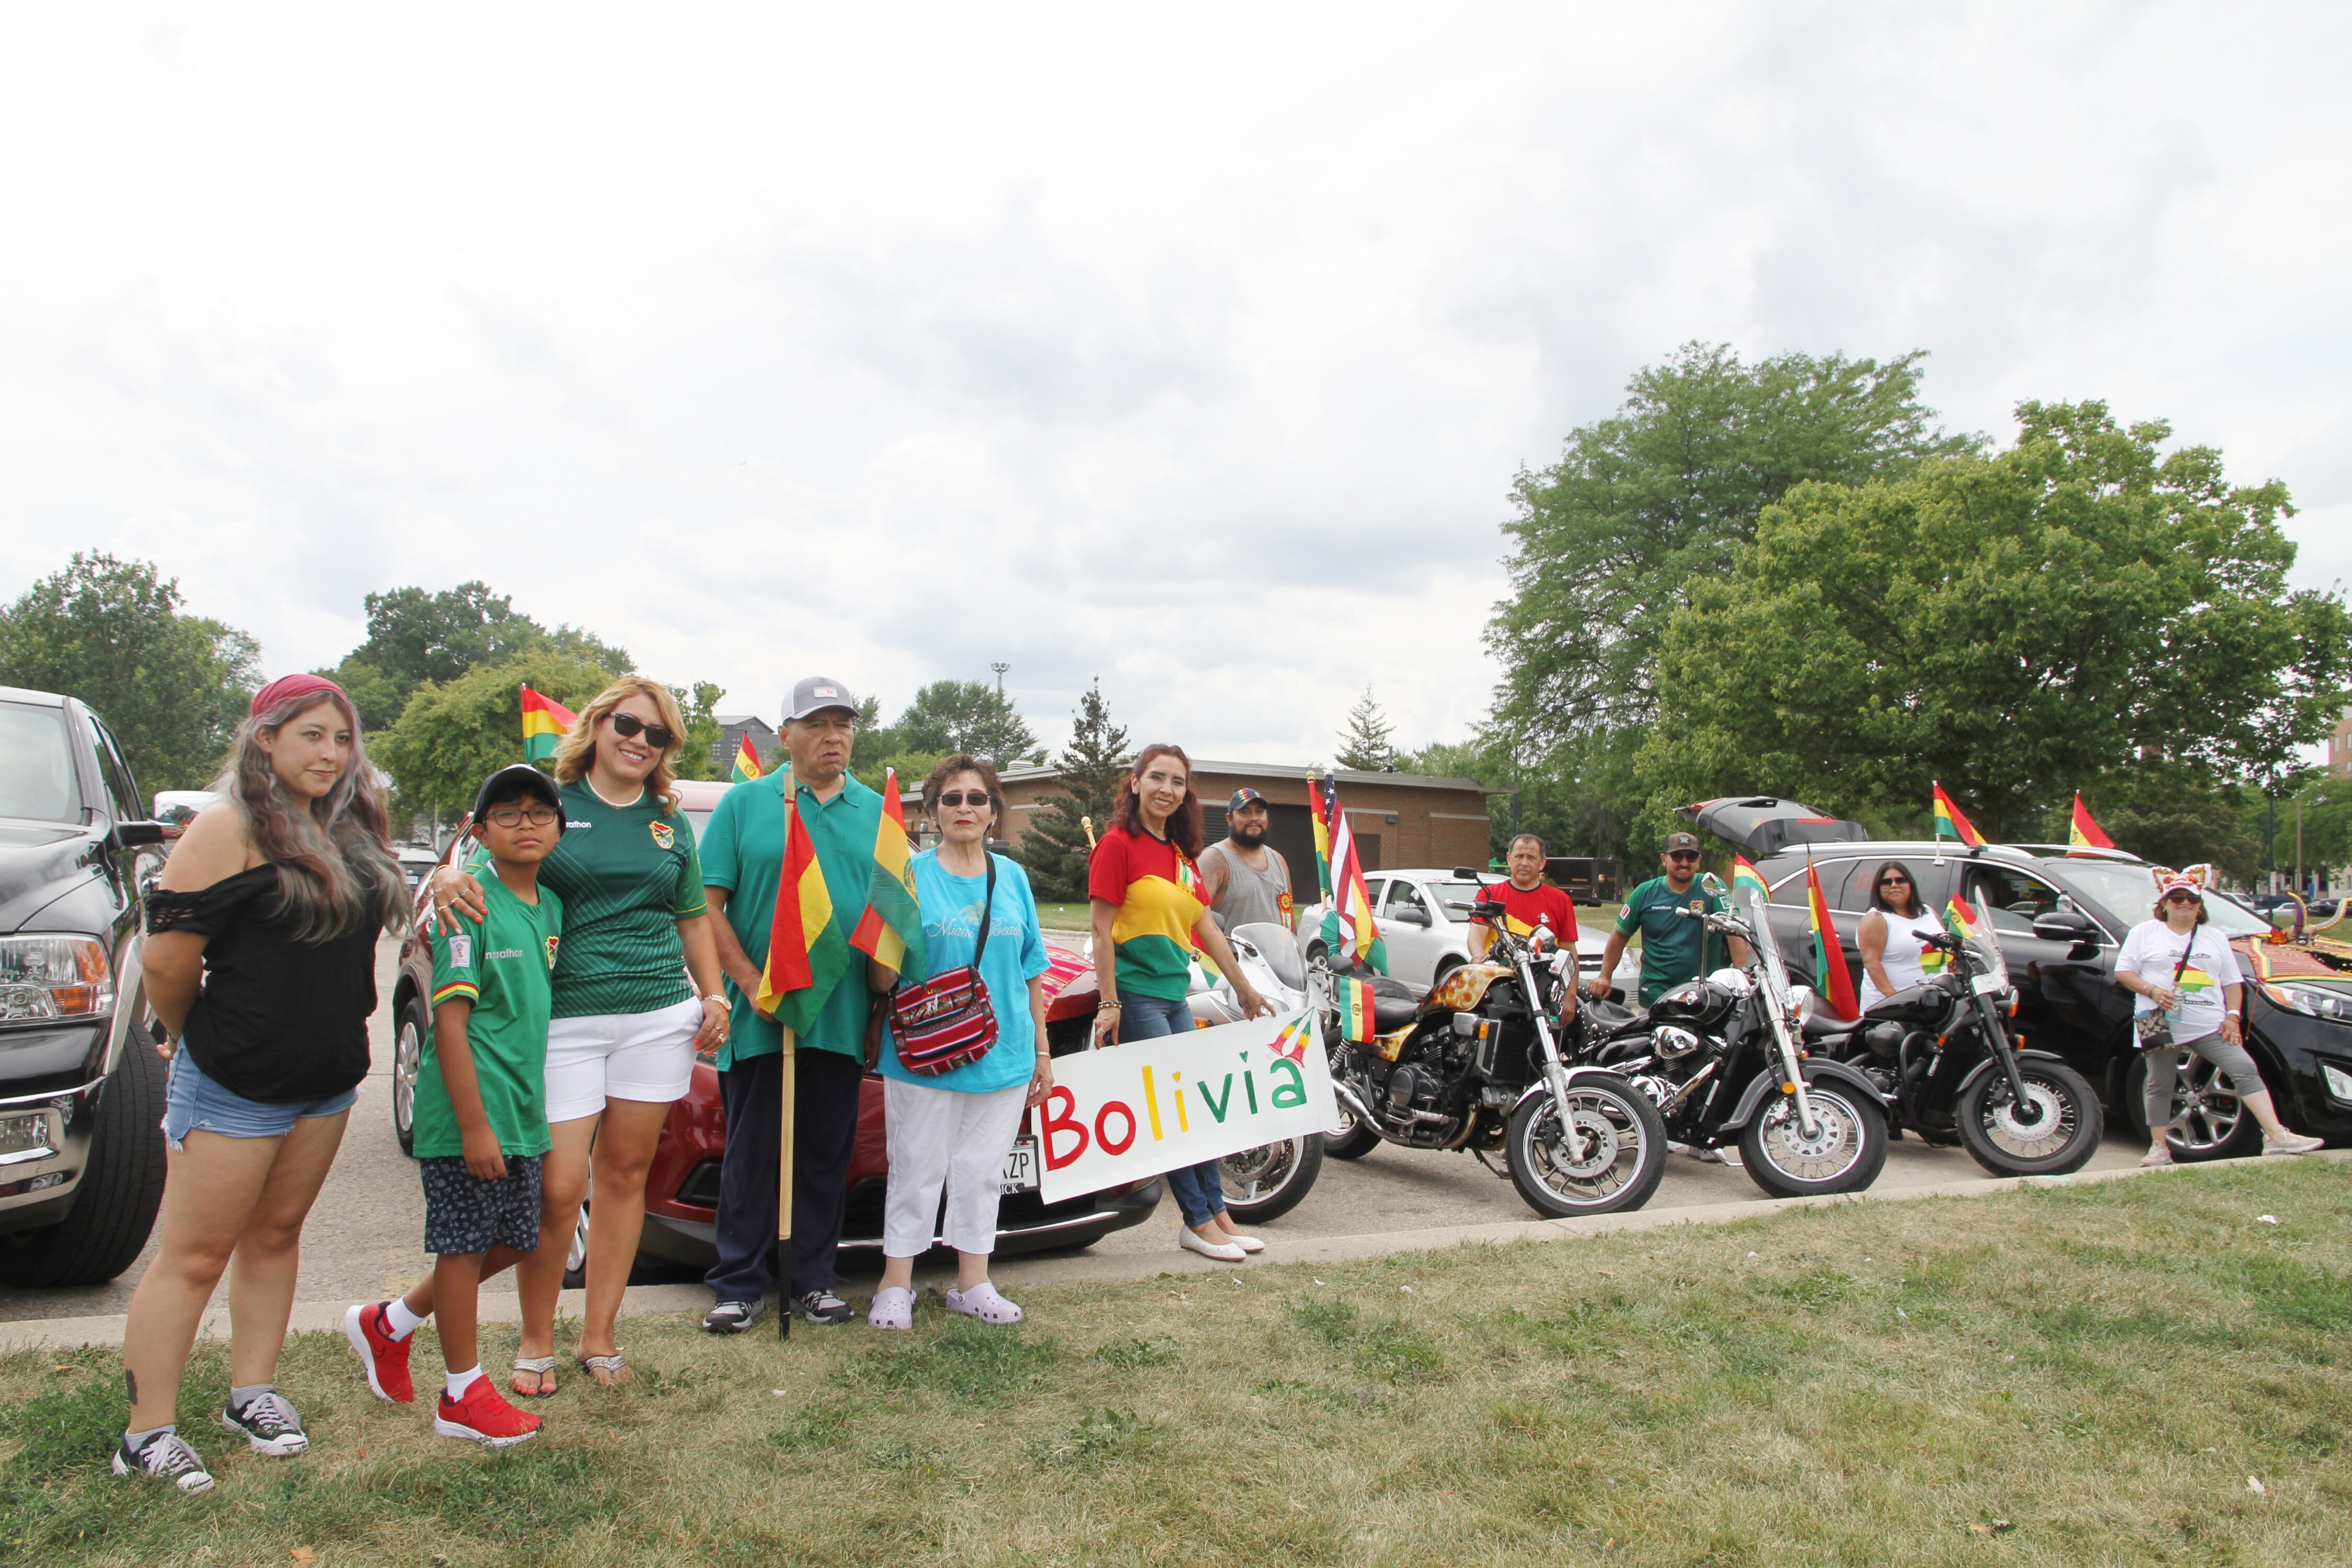 Bolivianos en Madison celebran aniversario de la independencia de Bolivia